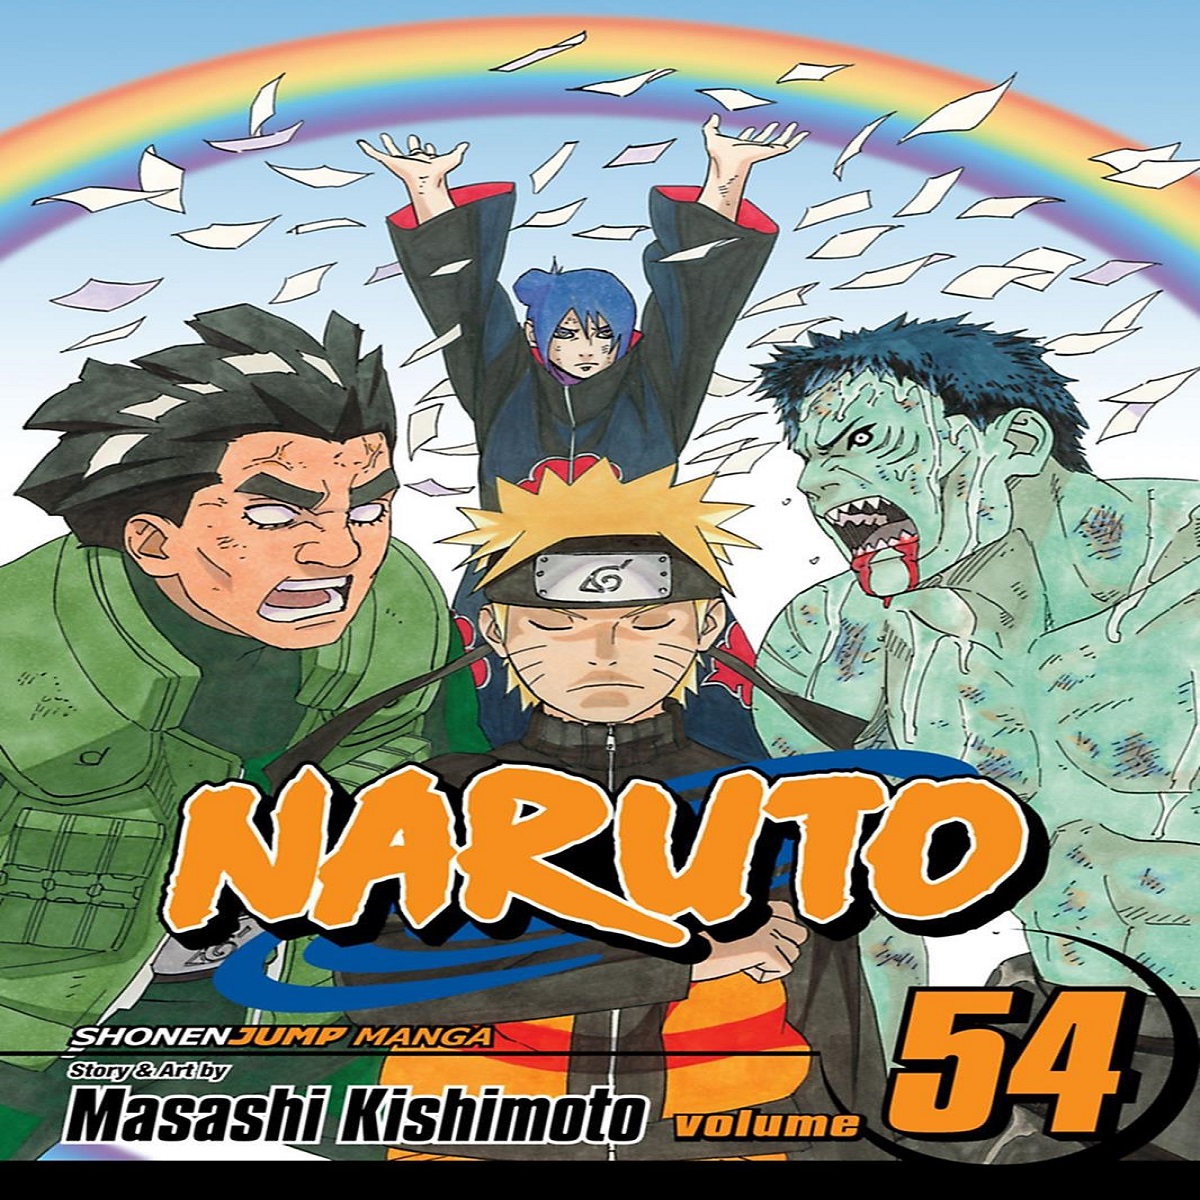 مجله Naruto 54 نوامبر 2011